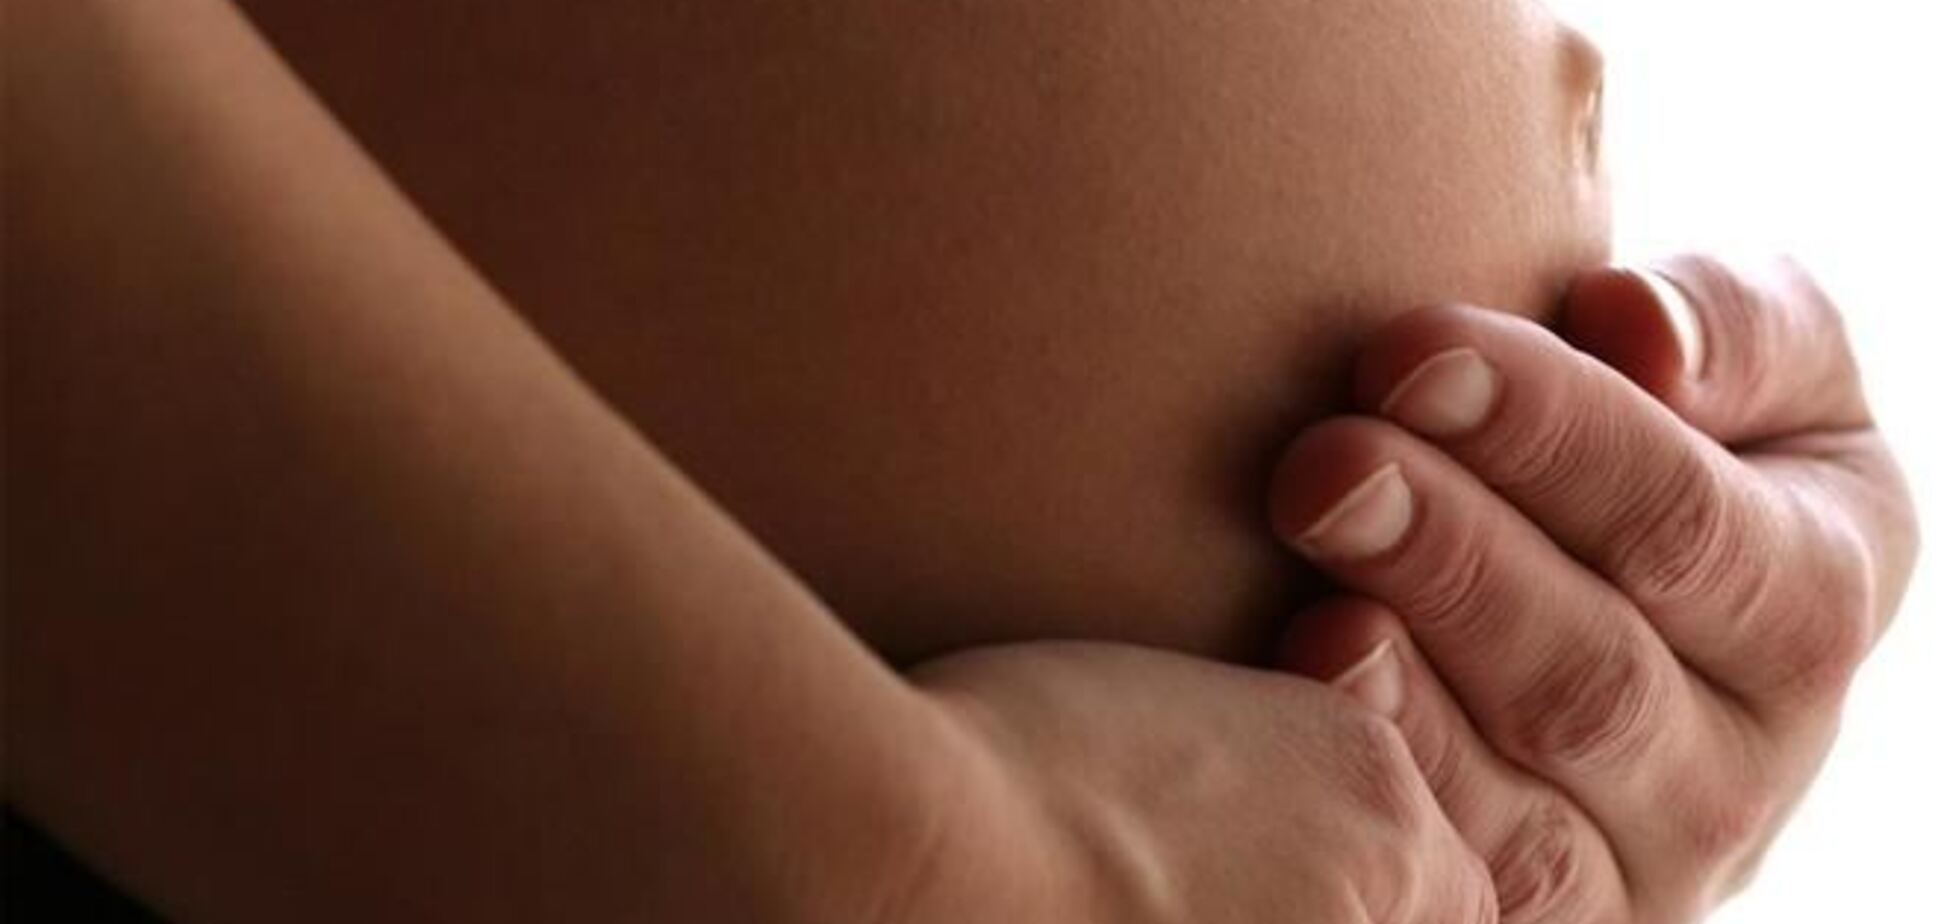 5 рекомендаций для беременных женщин в связи с ситуацией в стране